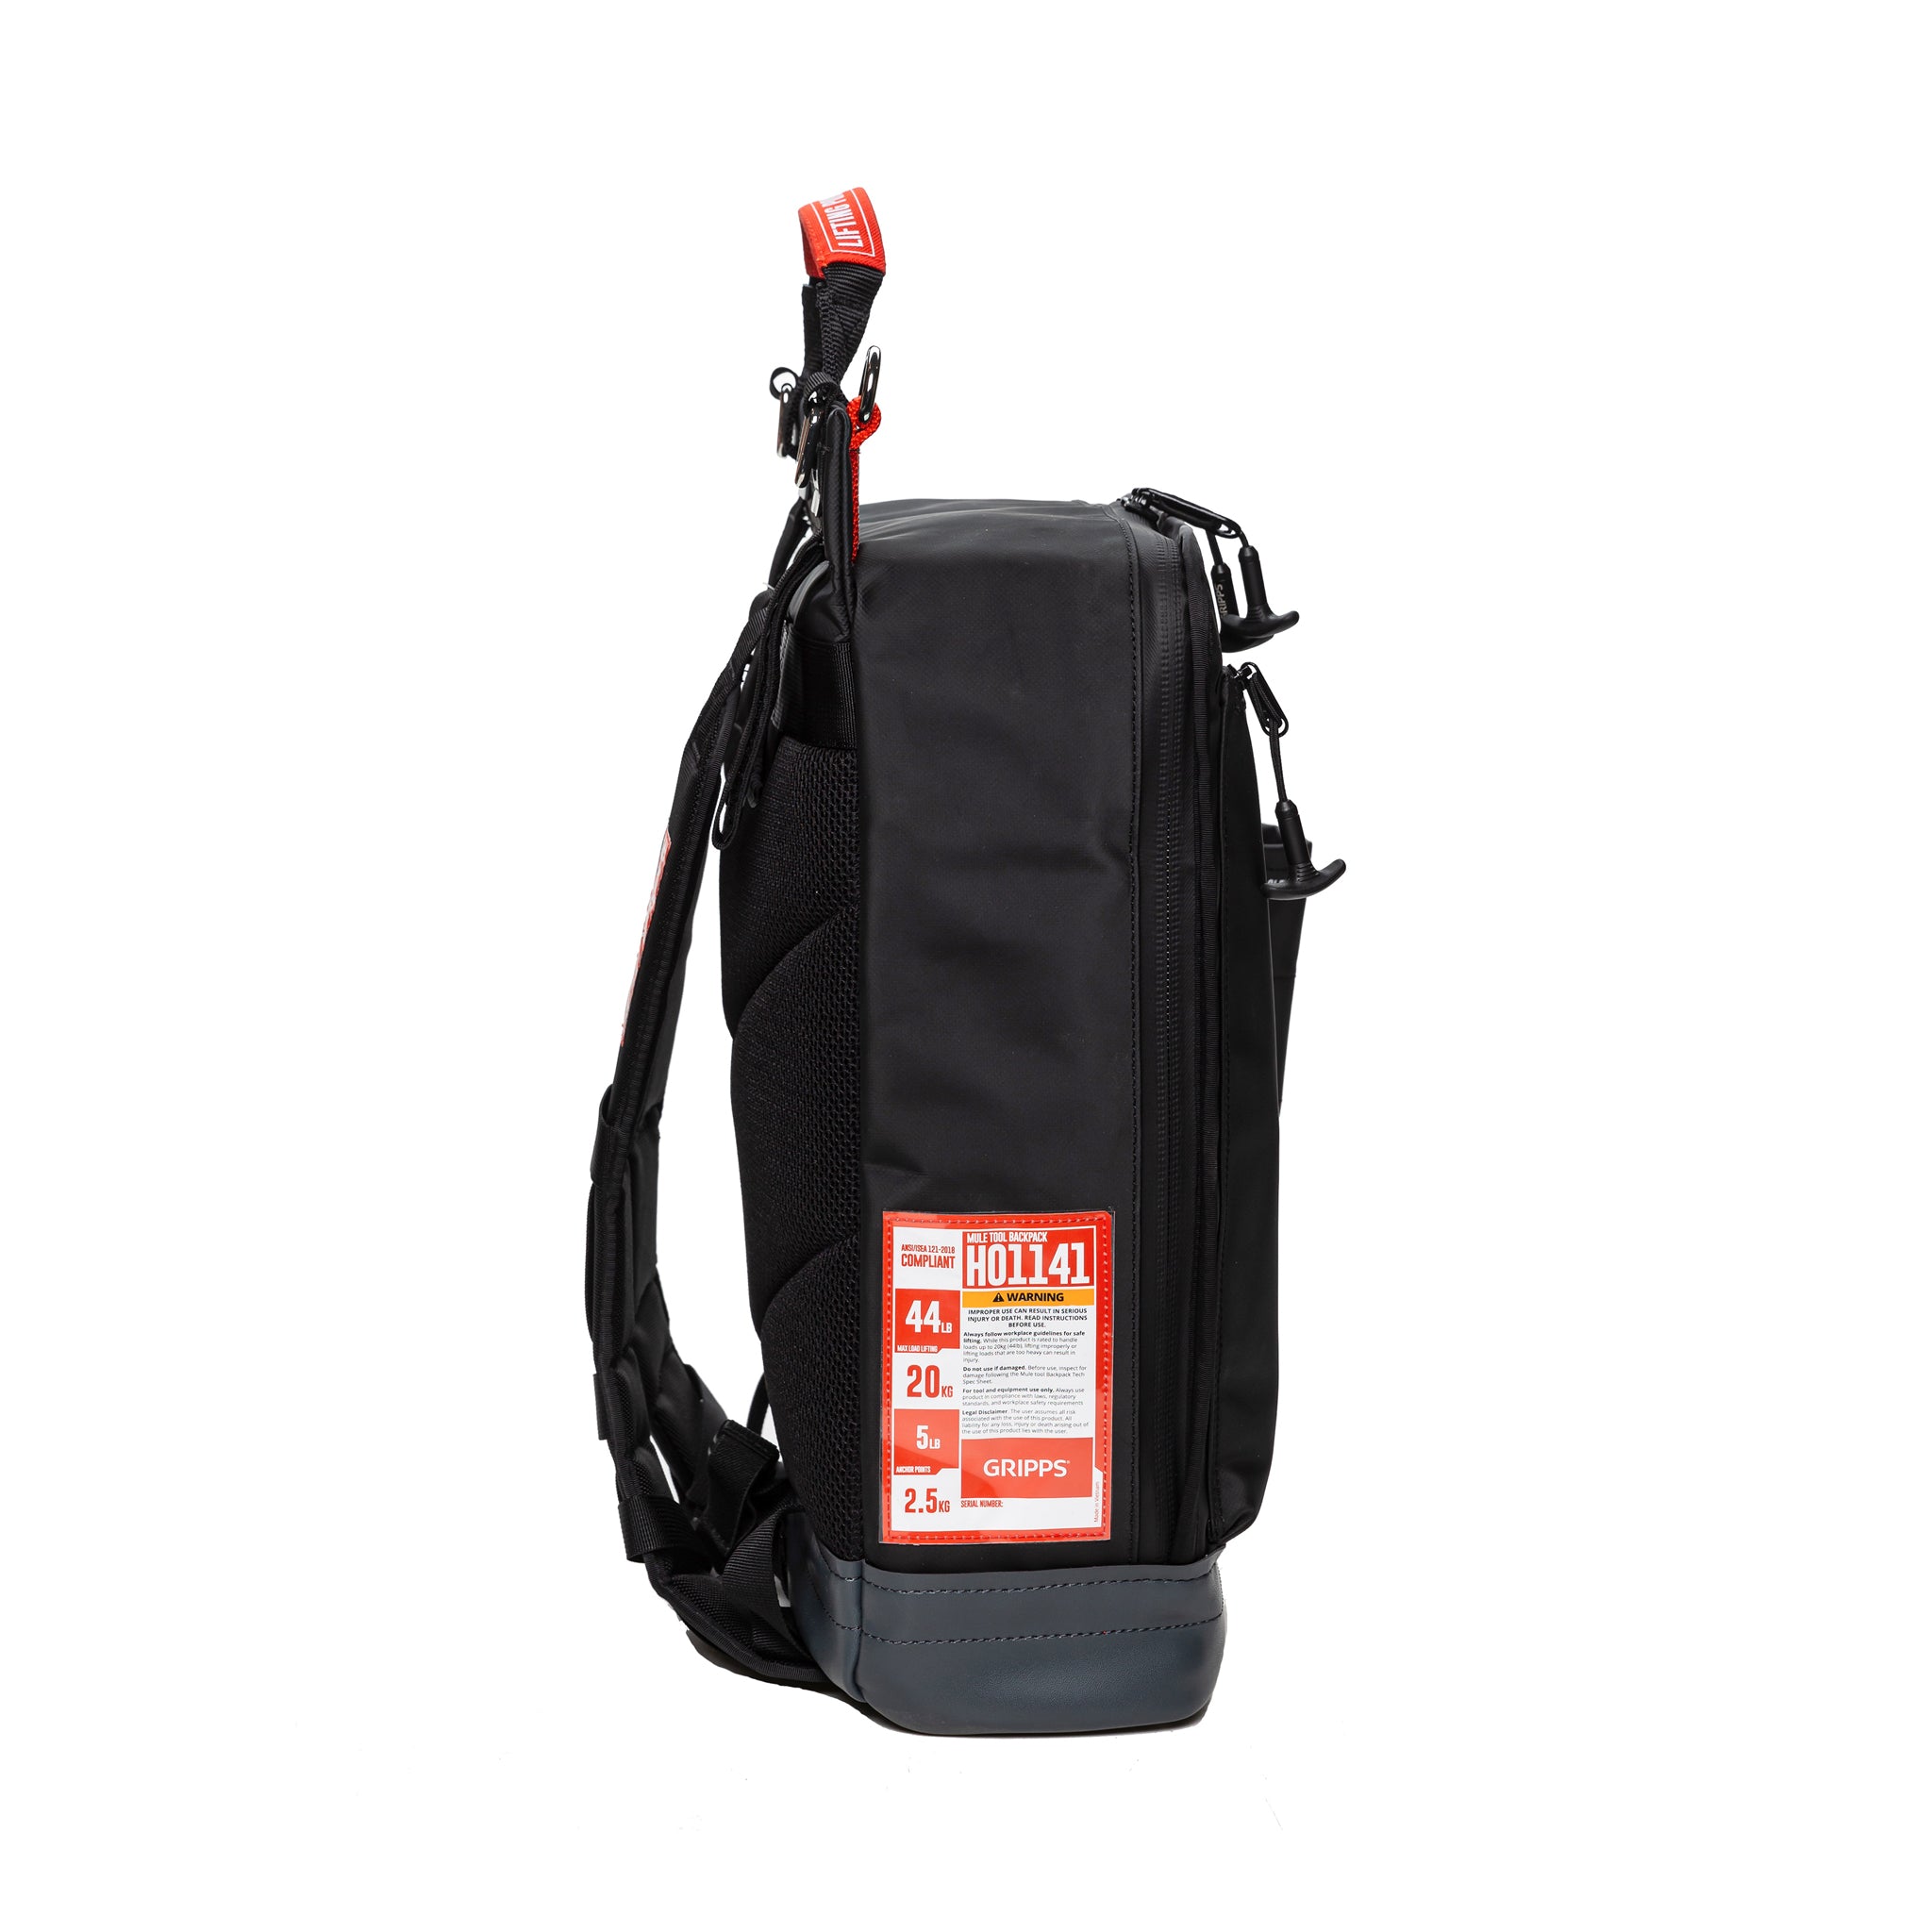 GRIPPS® Mule Tool Backpack - 20kg / 44lb